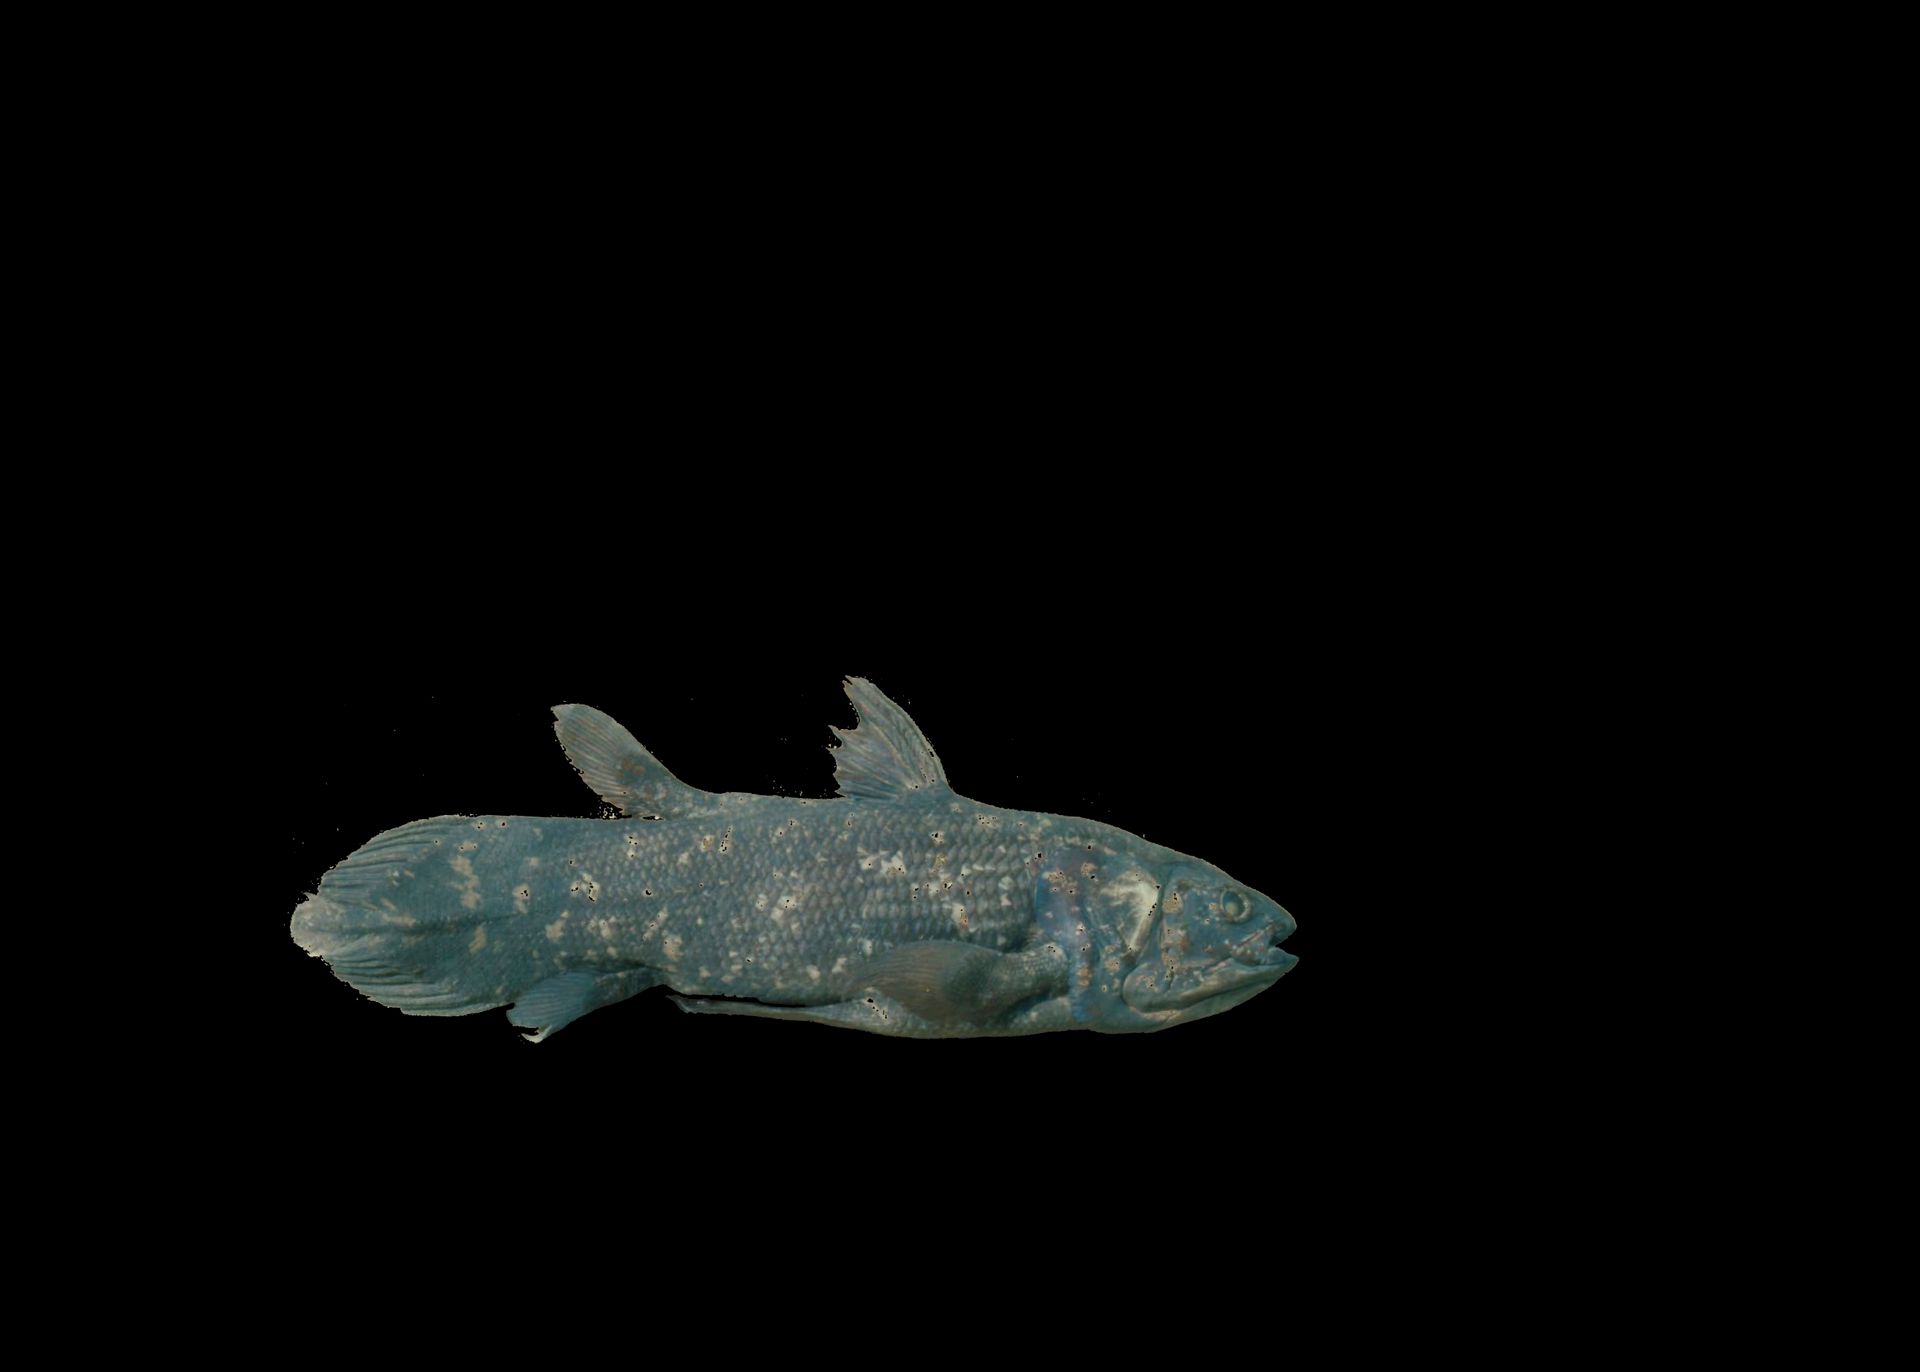 Fisken er fullvokst og blå-grå-brun i fargen, opplyst på en svart bakgrunn.